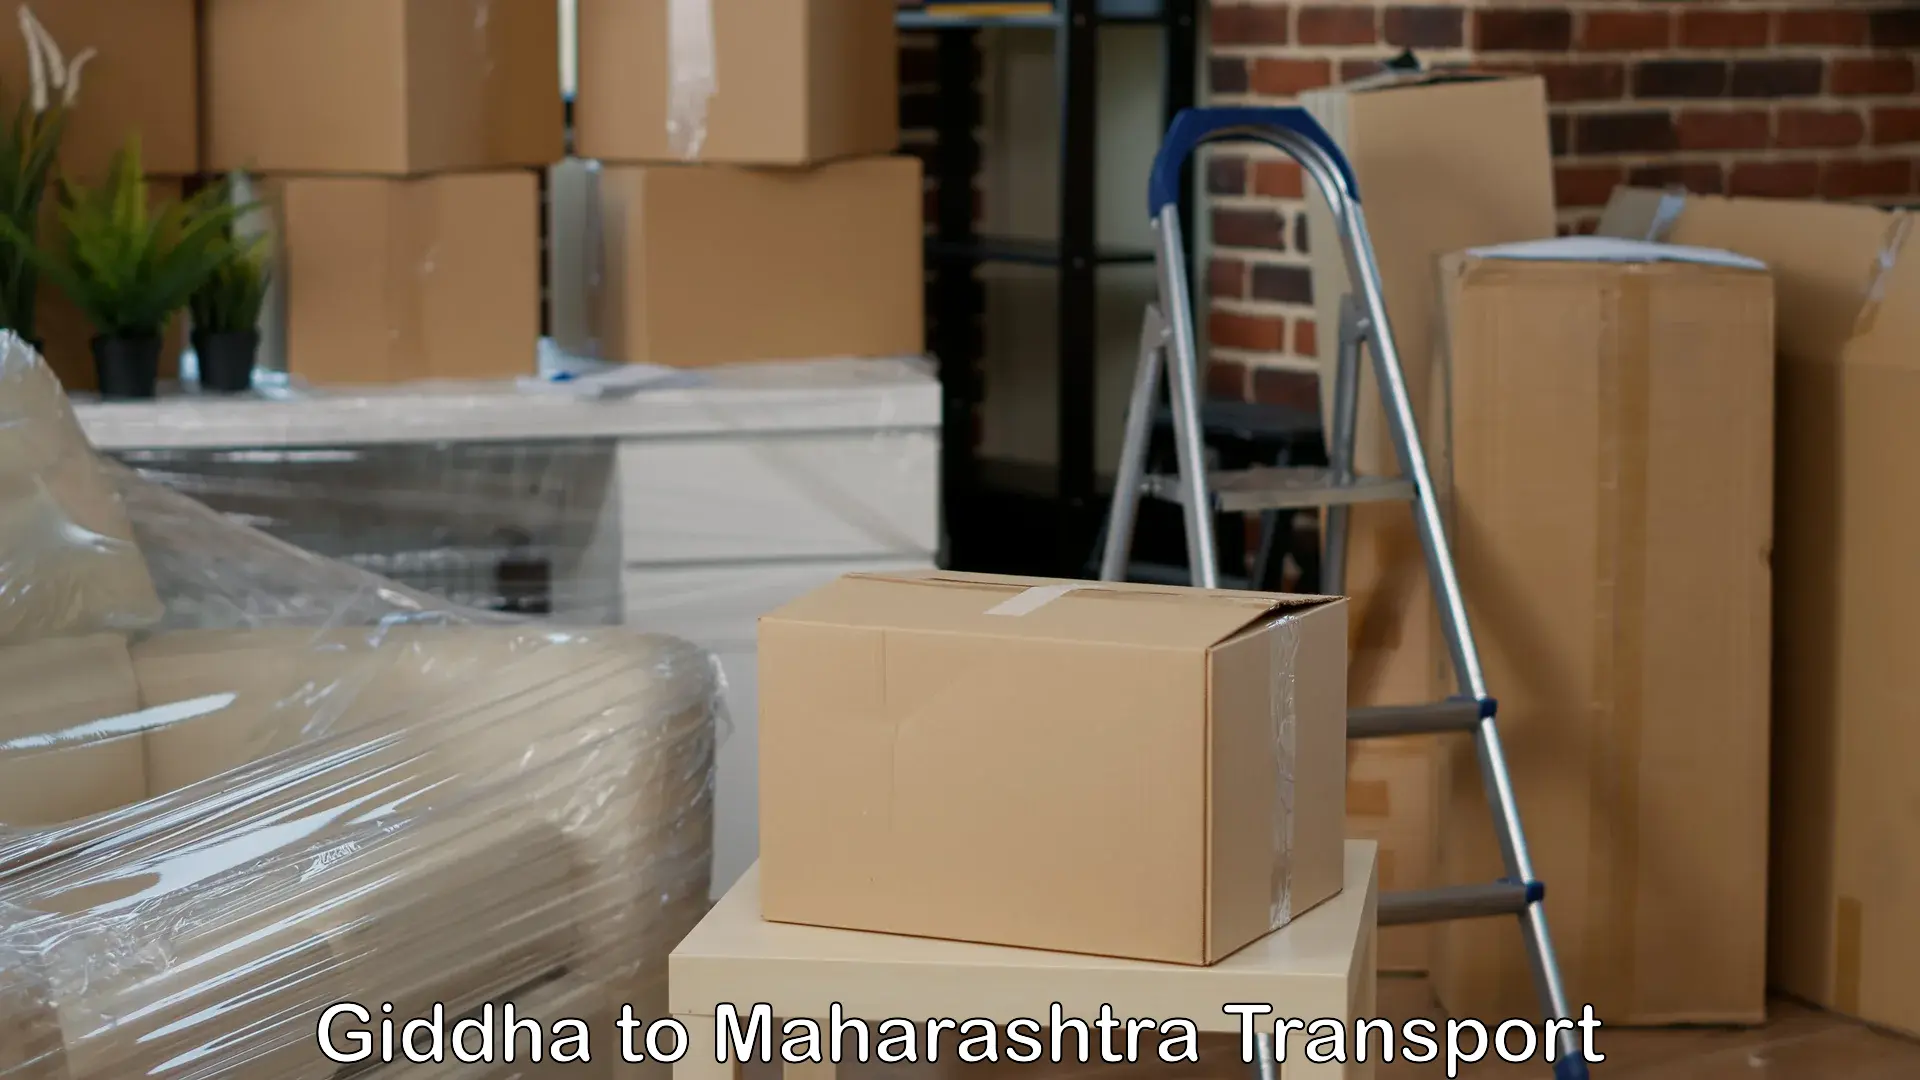 Daily transport service Giddha to Maharashtra